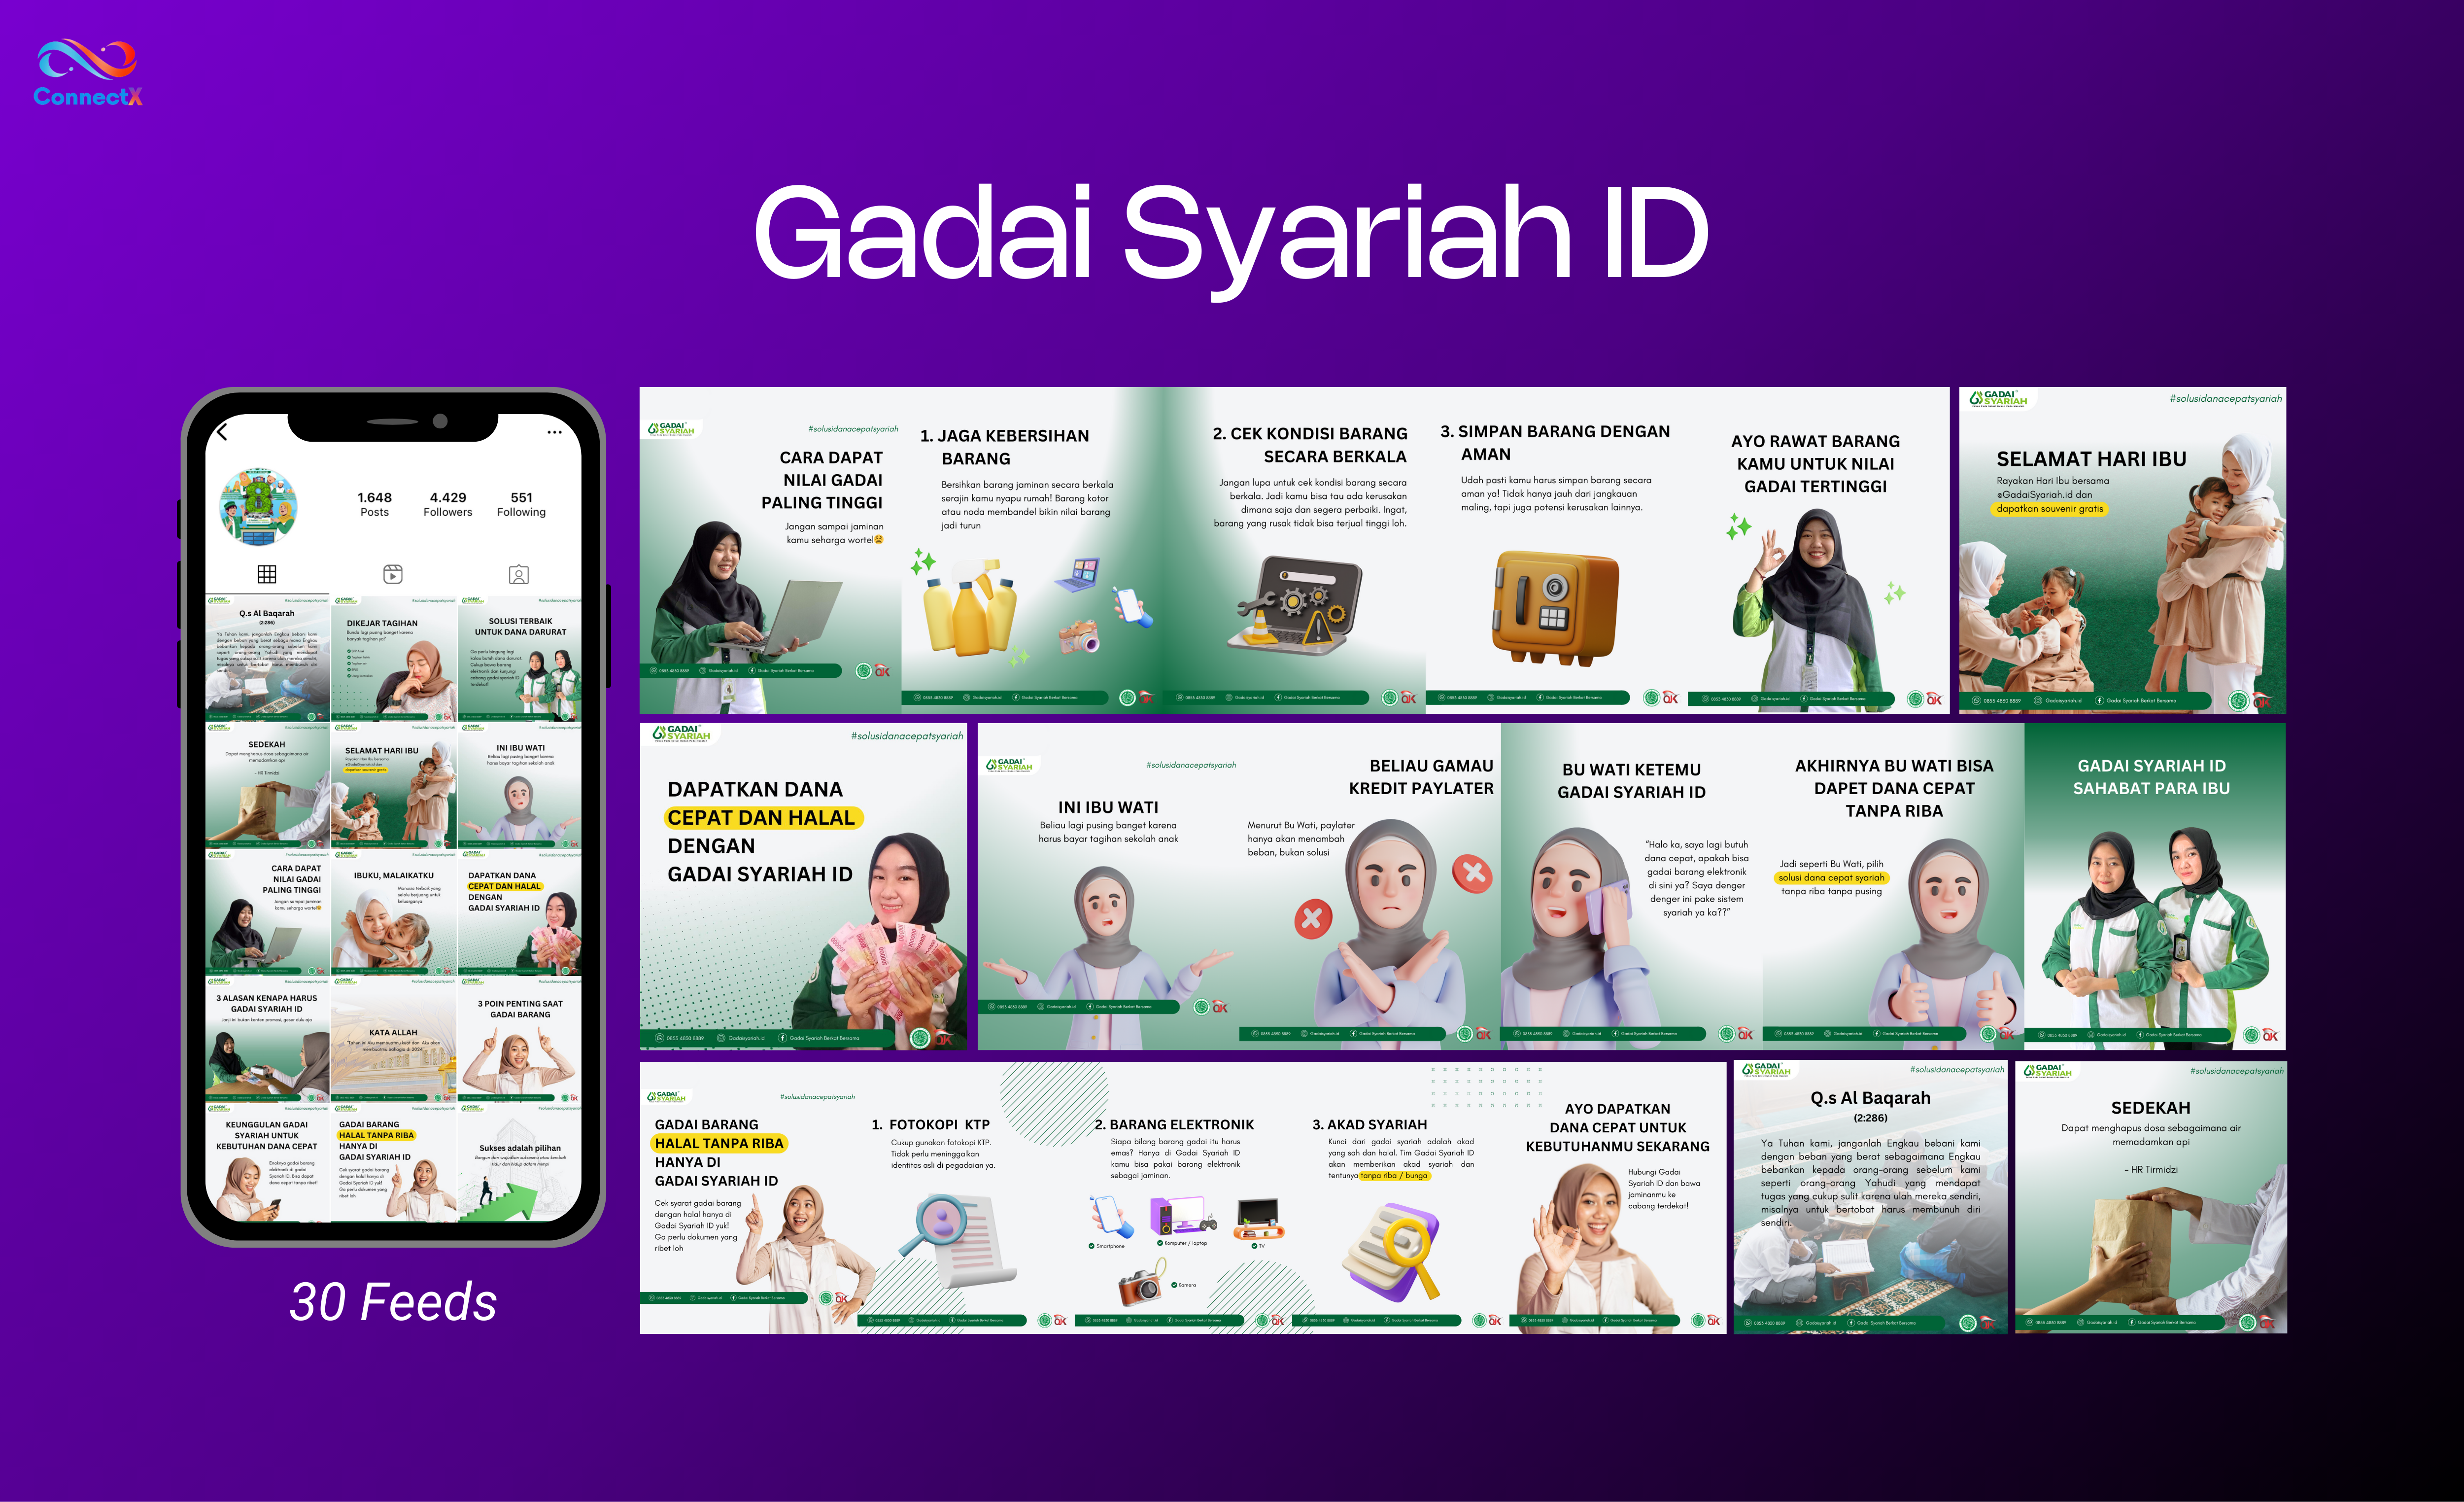 Gadai Syariah ID